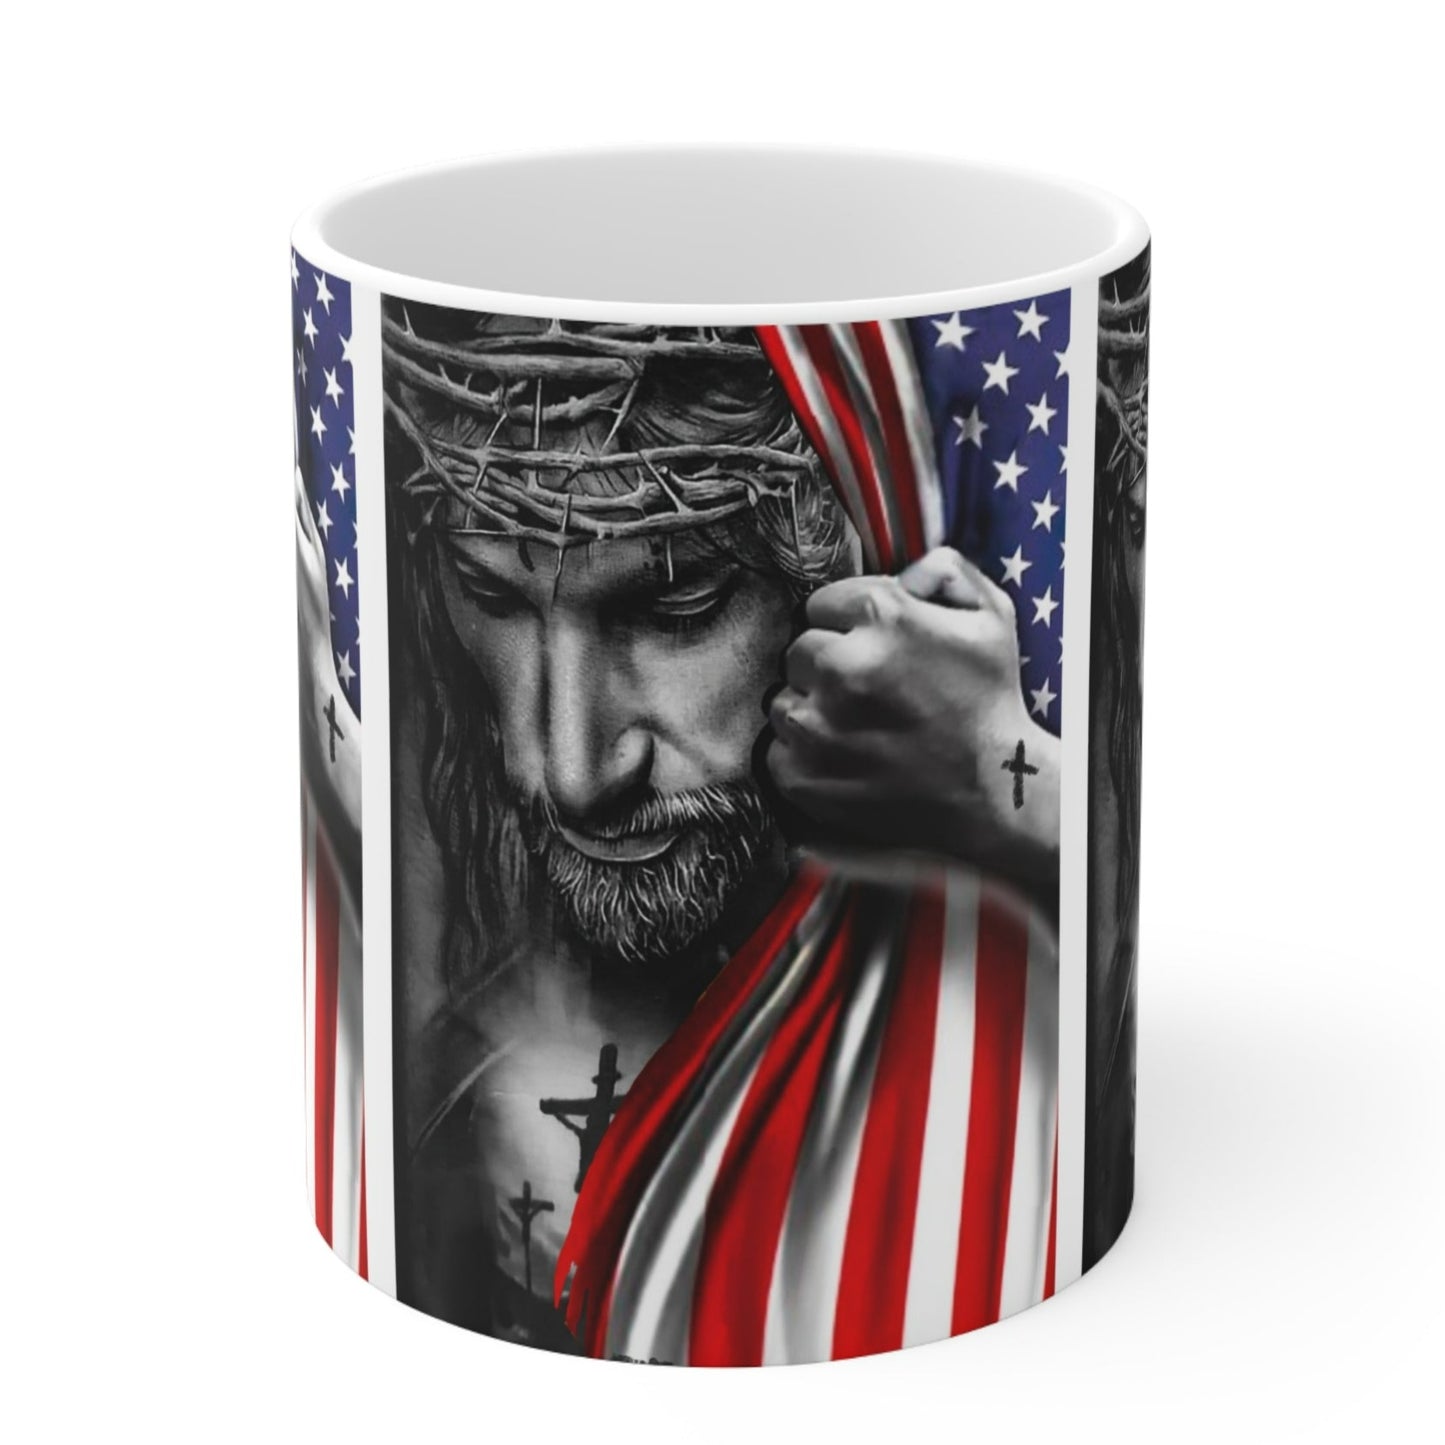 JESUS HUGGING USA FLAG MUG - MUGSCITY - Free Shipping